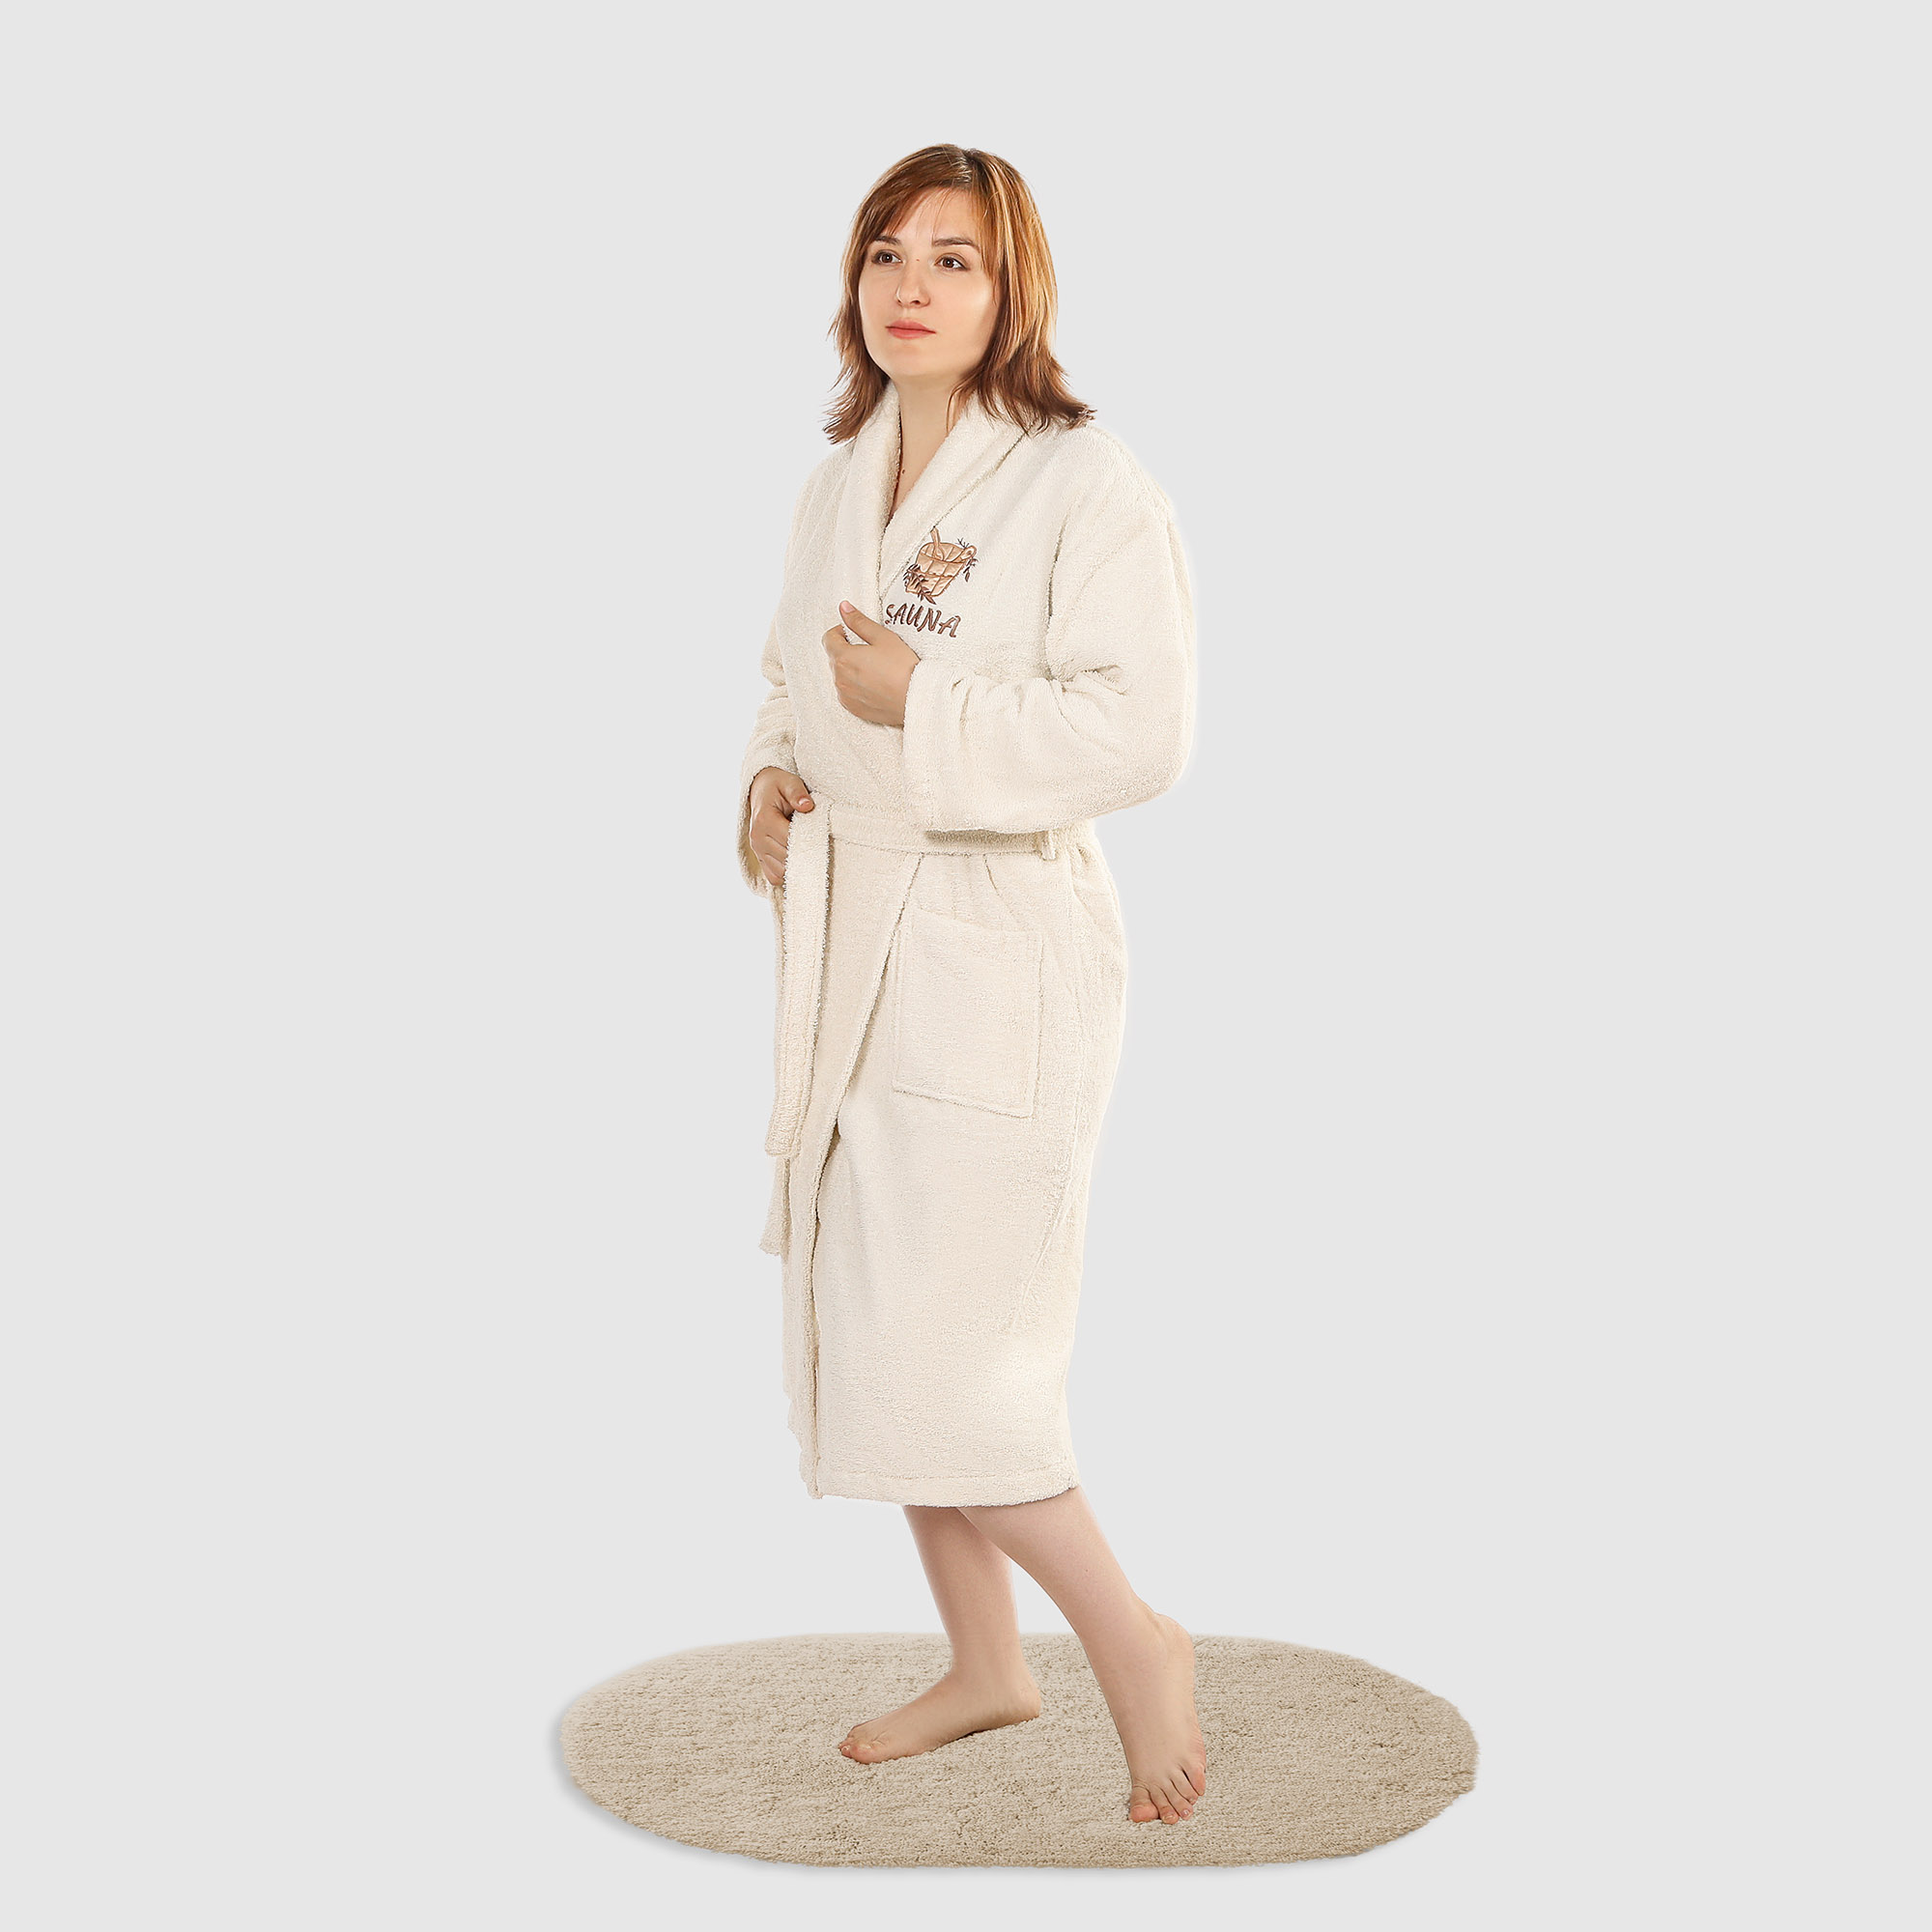 Халат женский Asil sauna Beige XL махровый с воротником халат женский asil sauna kimono beige m махровый